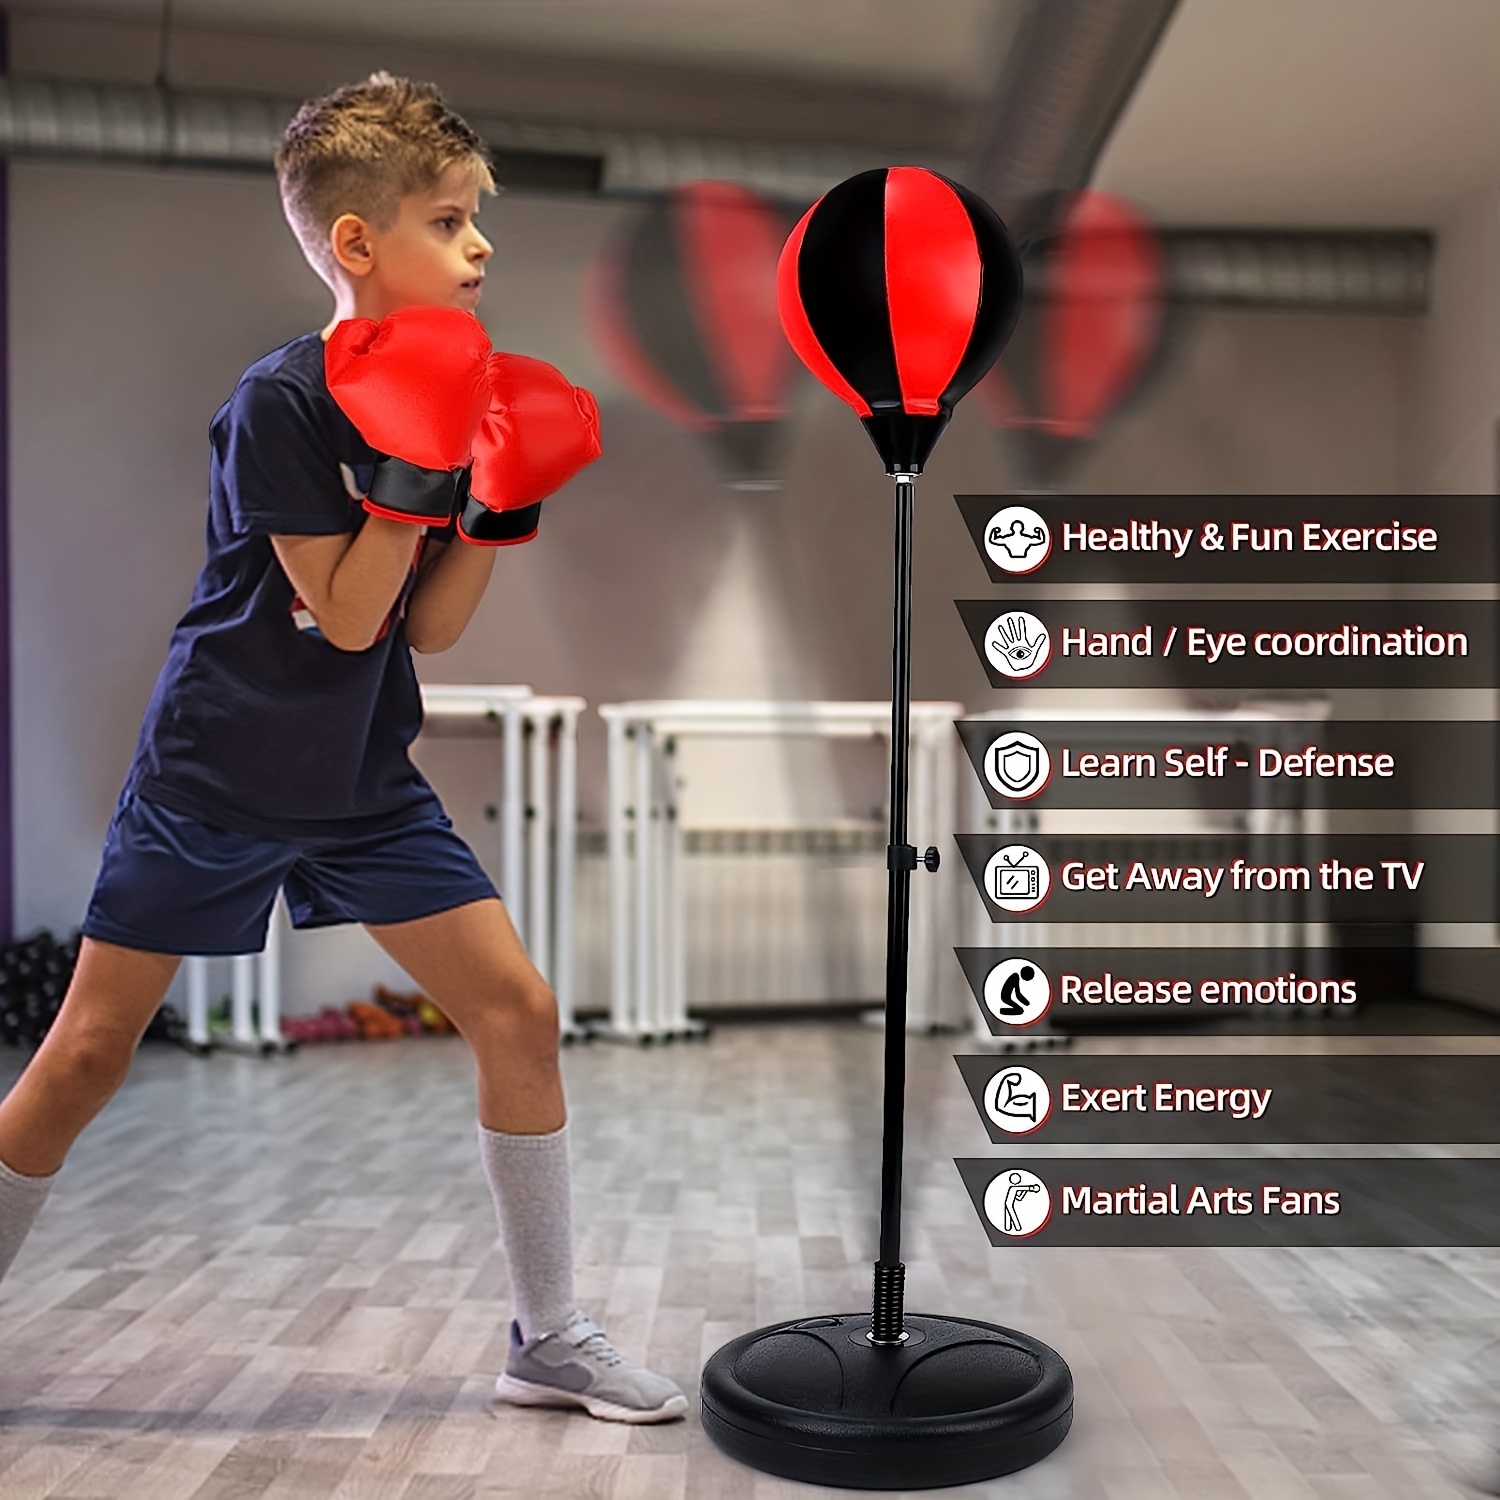 Juego de saco de boxeo para niños, incluye pelota de boxeo con soporte,  guantes de entrenamiento de boxeo, bomba de mano y soporte de altura